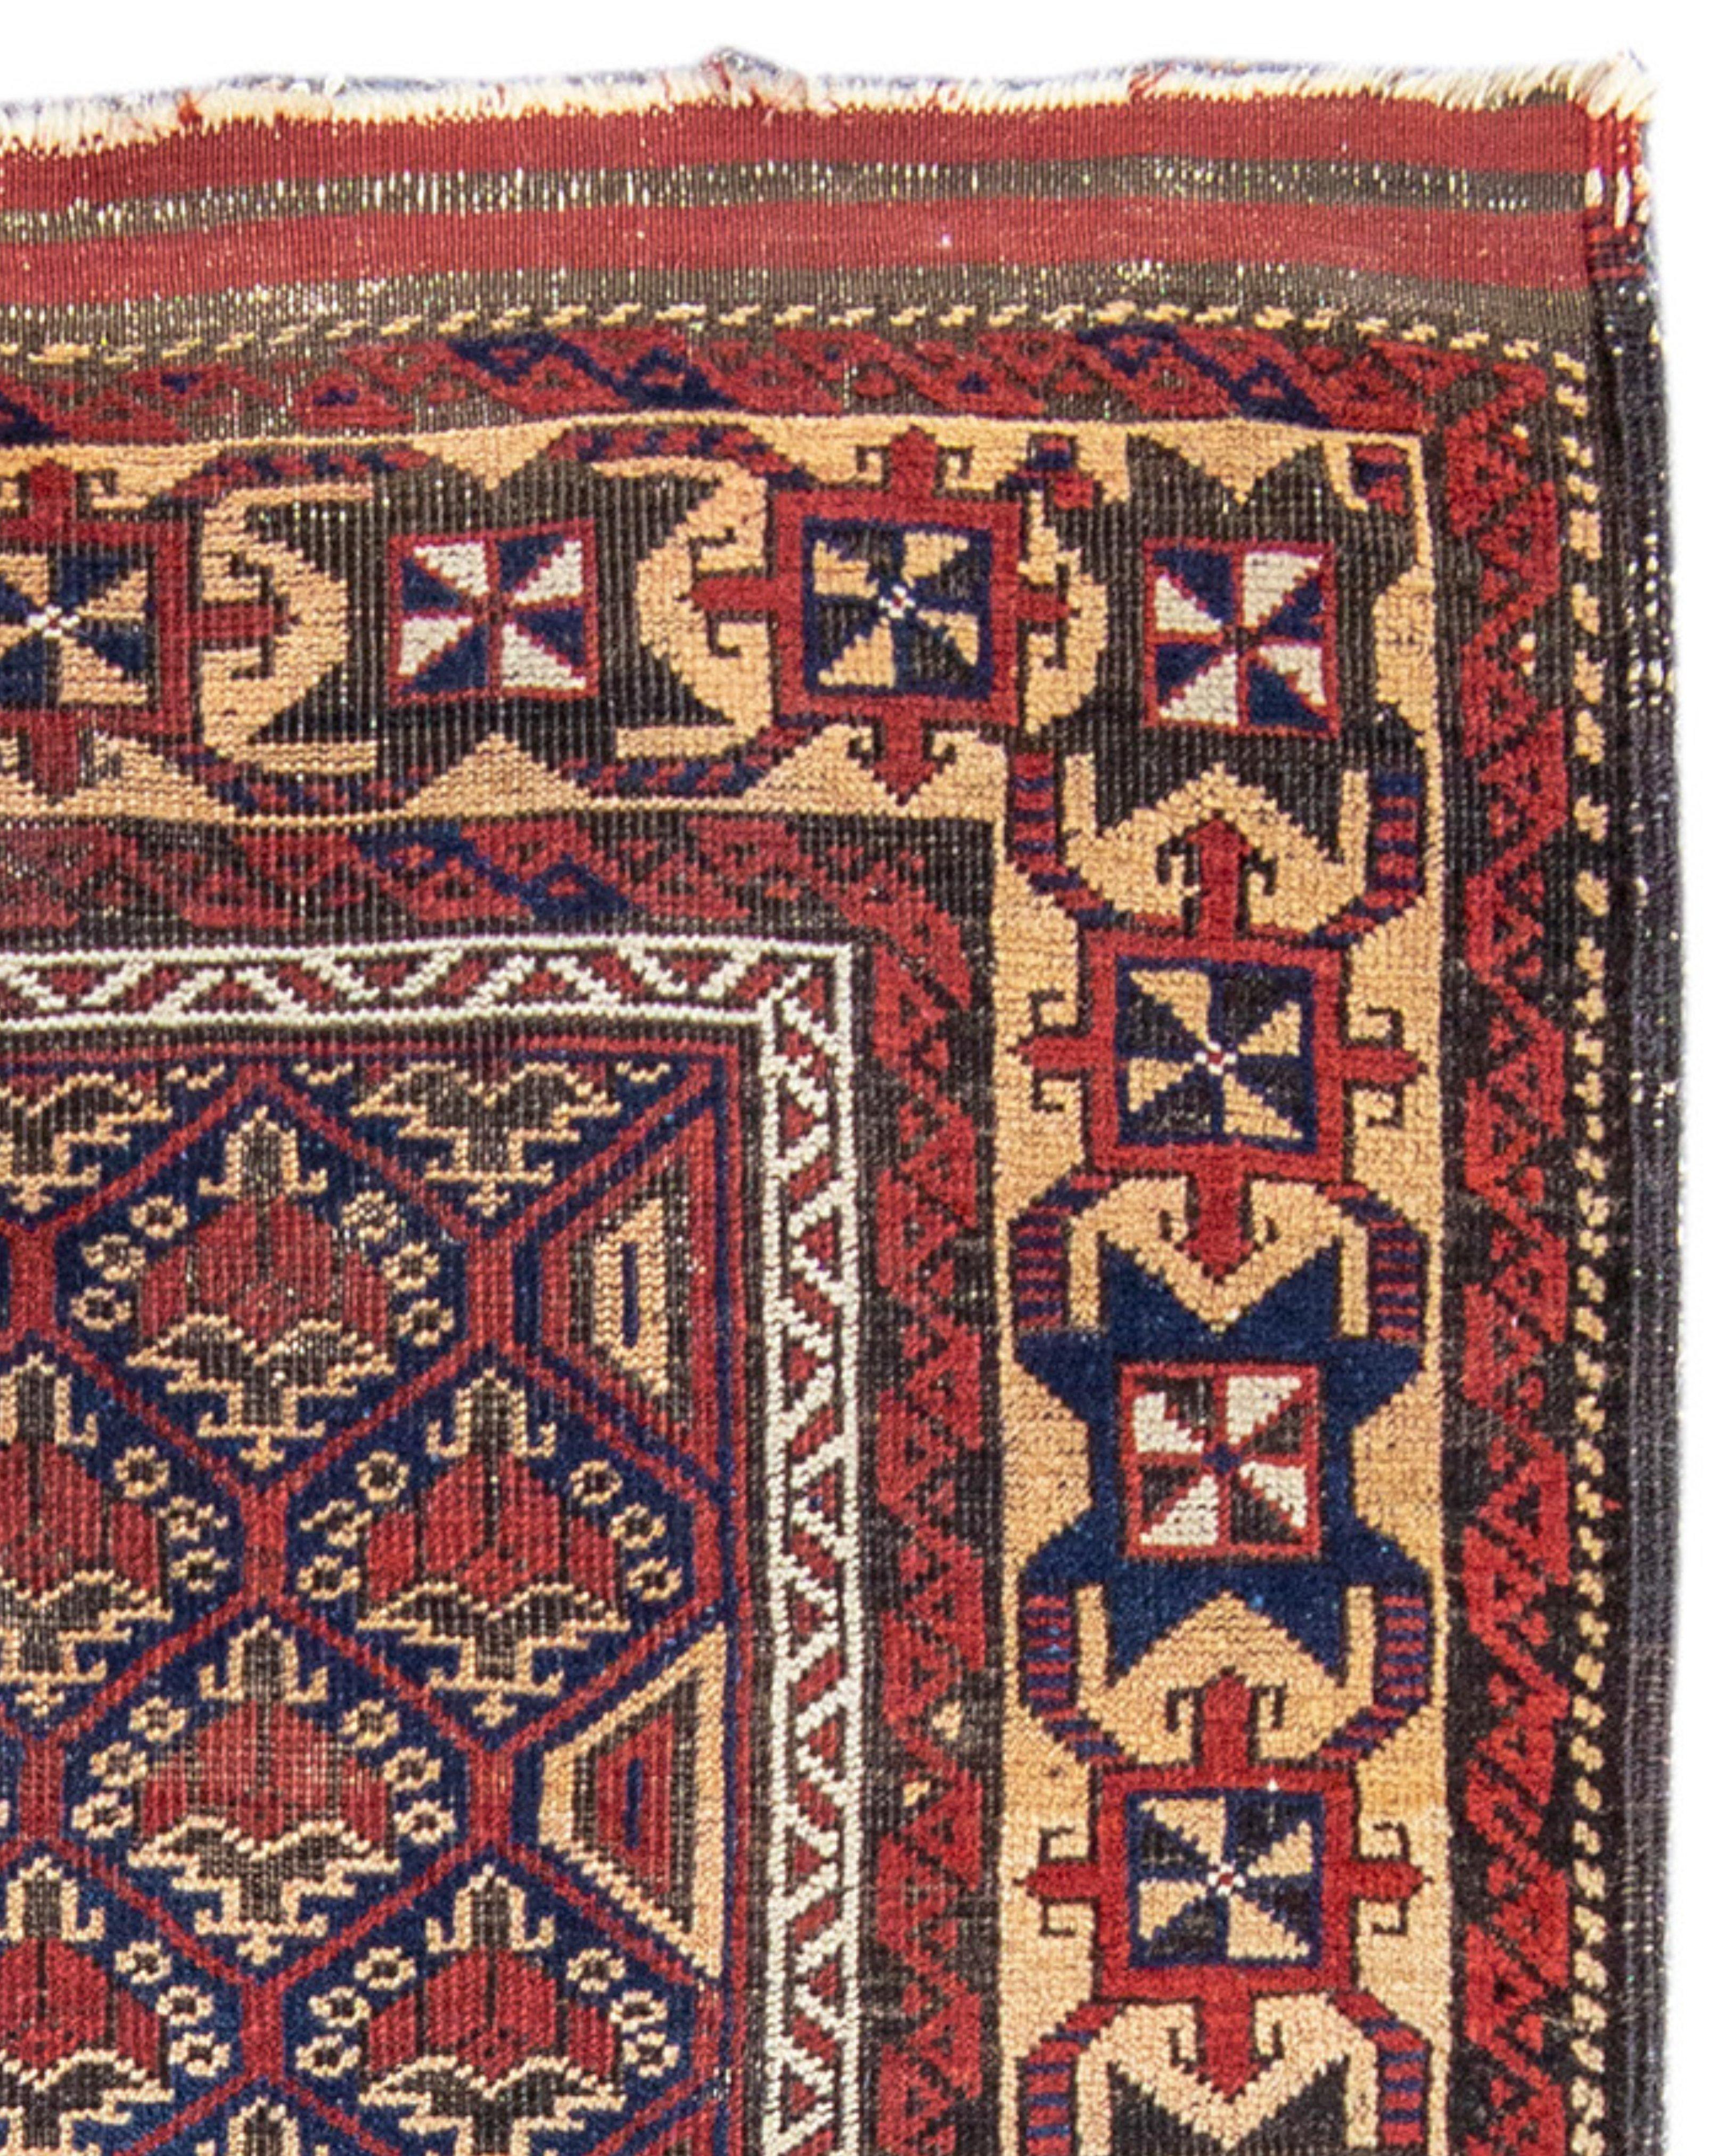 Belutsch-Teppich, 19. Jahrhundert

Zusätzliche Informationen:
Abmessungen: 2'10